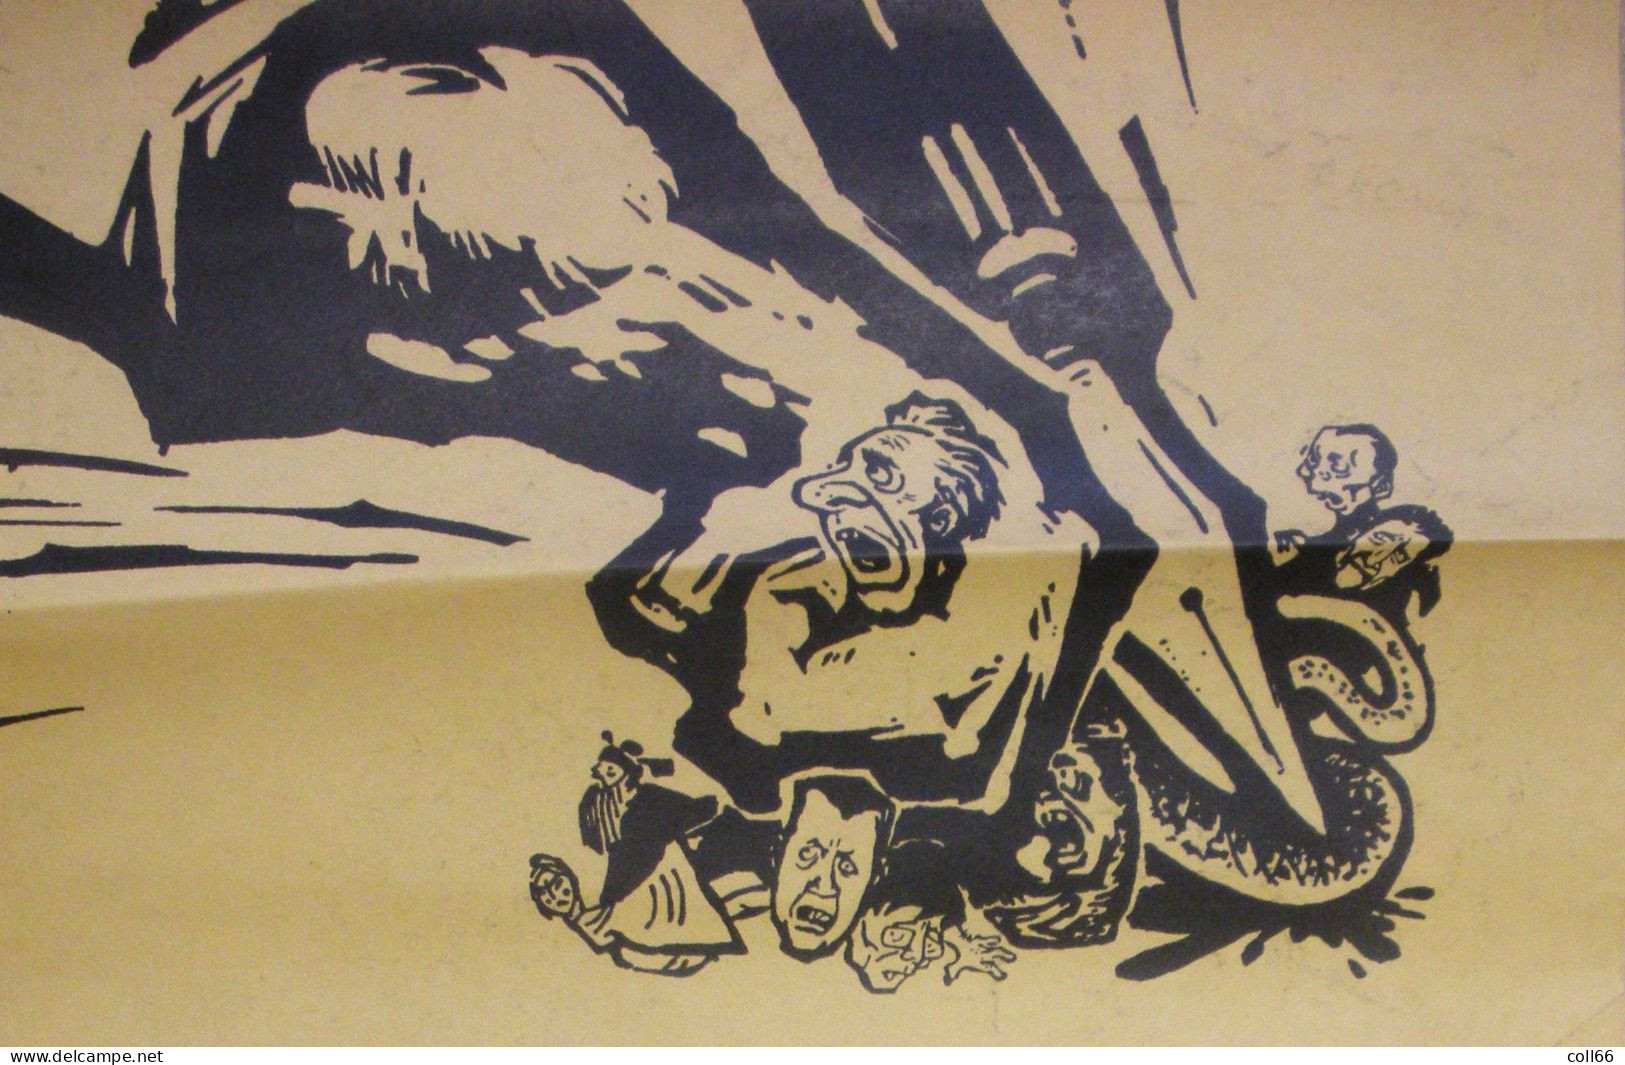 Affiche Propagande Communiste Chine Mao Anti-USA Serpent Impérialisme  51.5x76 Cm Port Franco Suivii - Documents Historiques